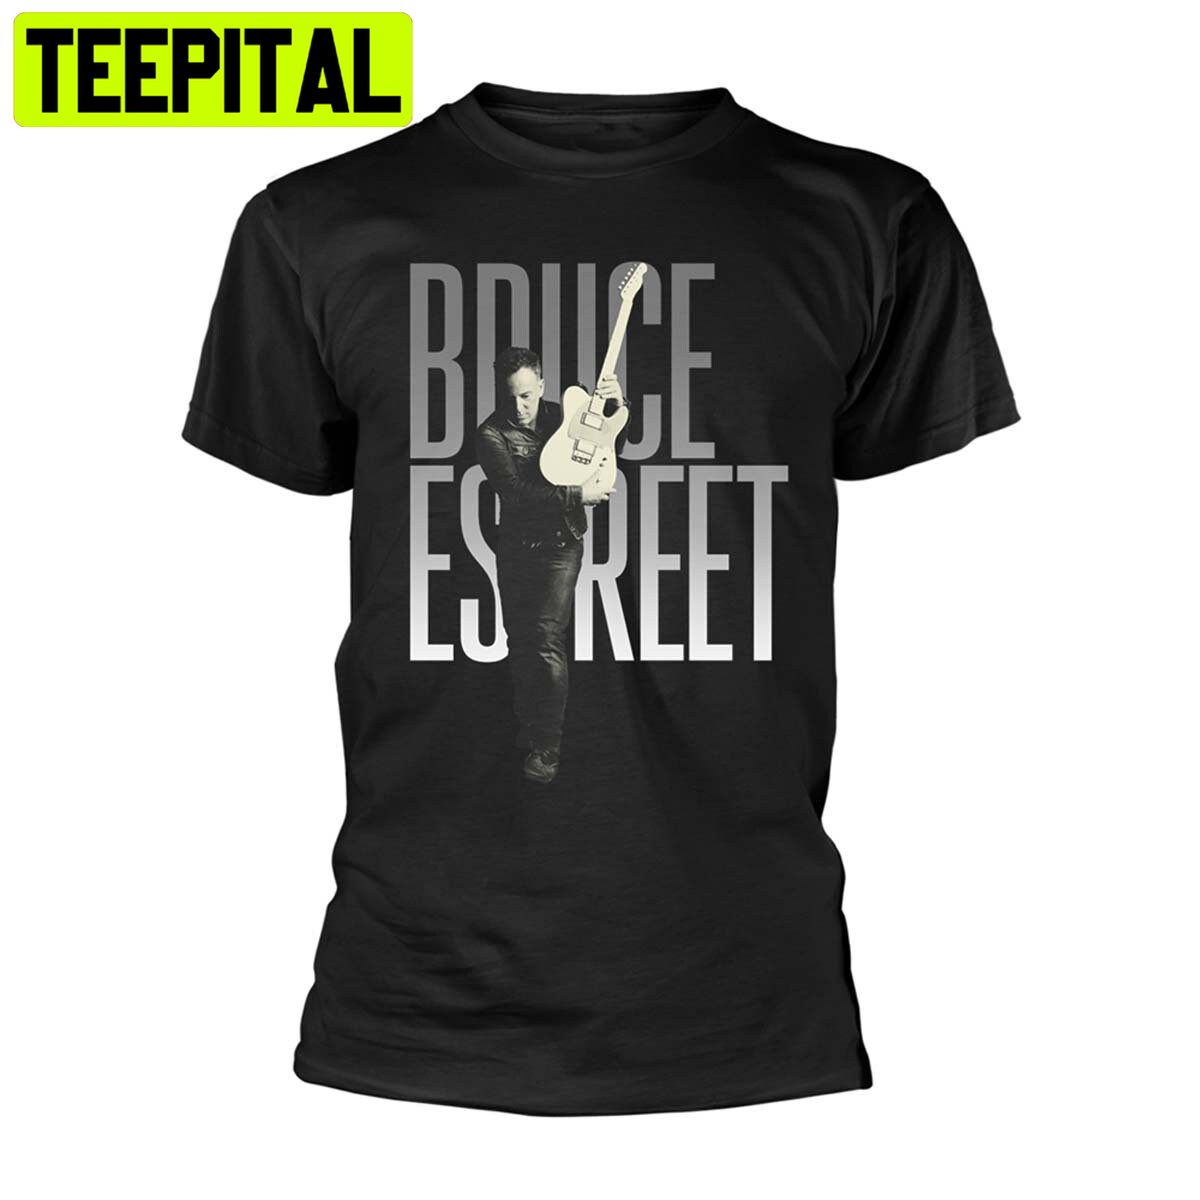 Bruce Springsteen E Street Band Telecaster Pose Trending Unisex Shirt